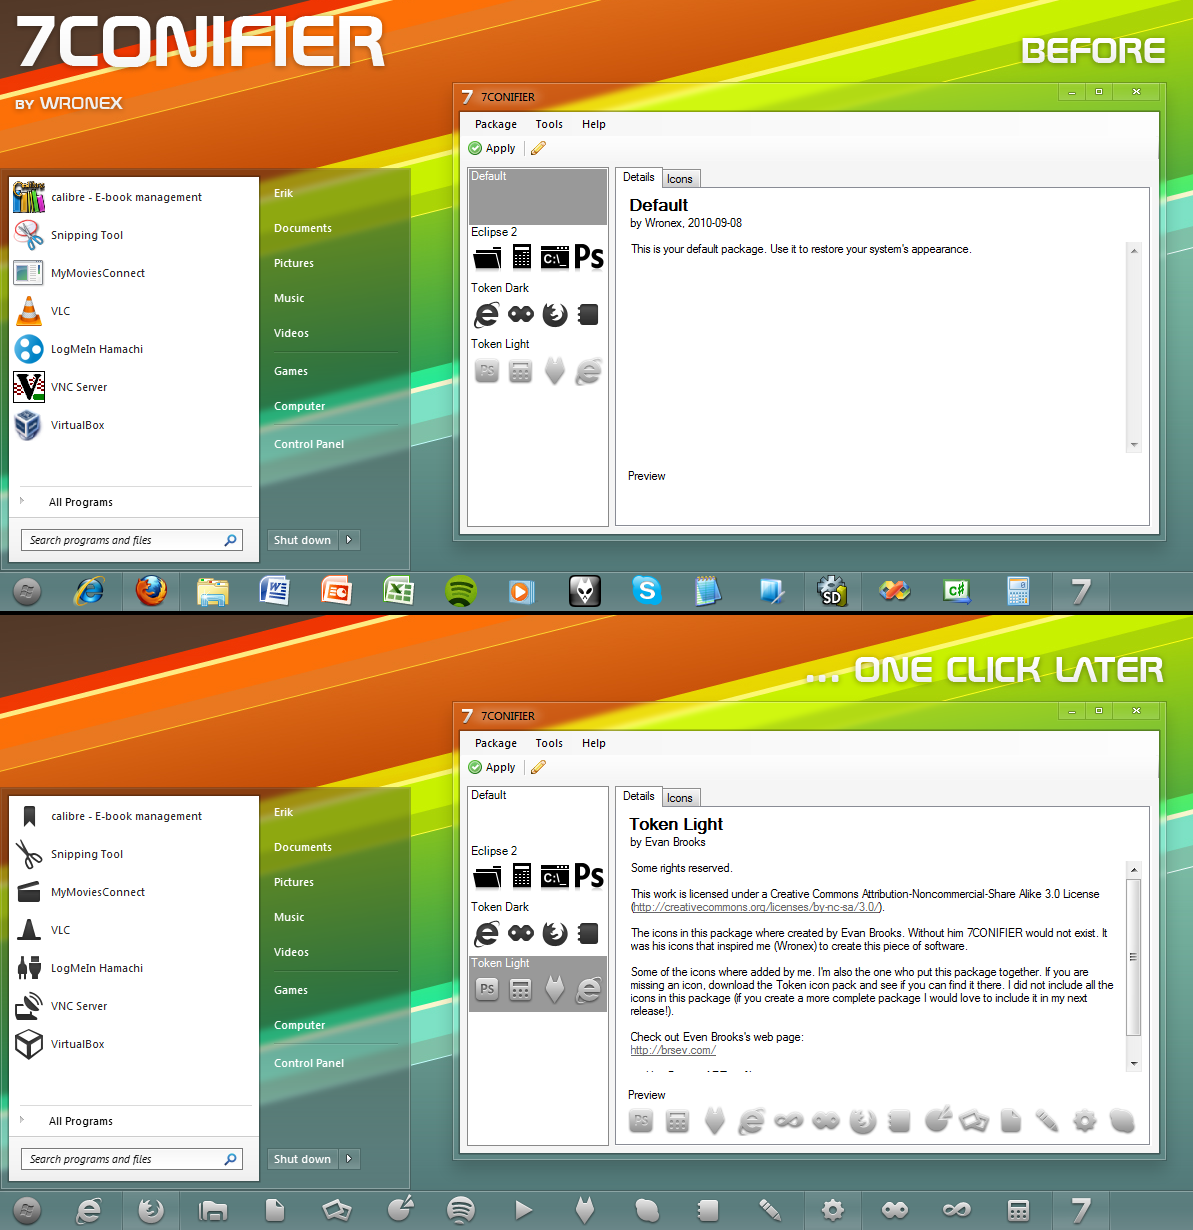 7Conifier screen 1